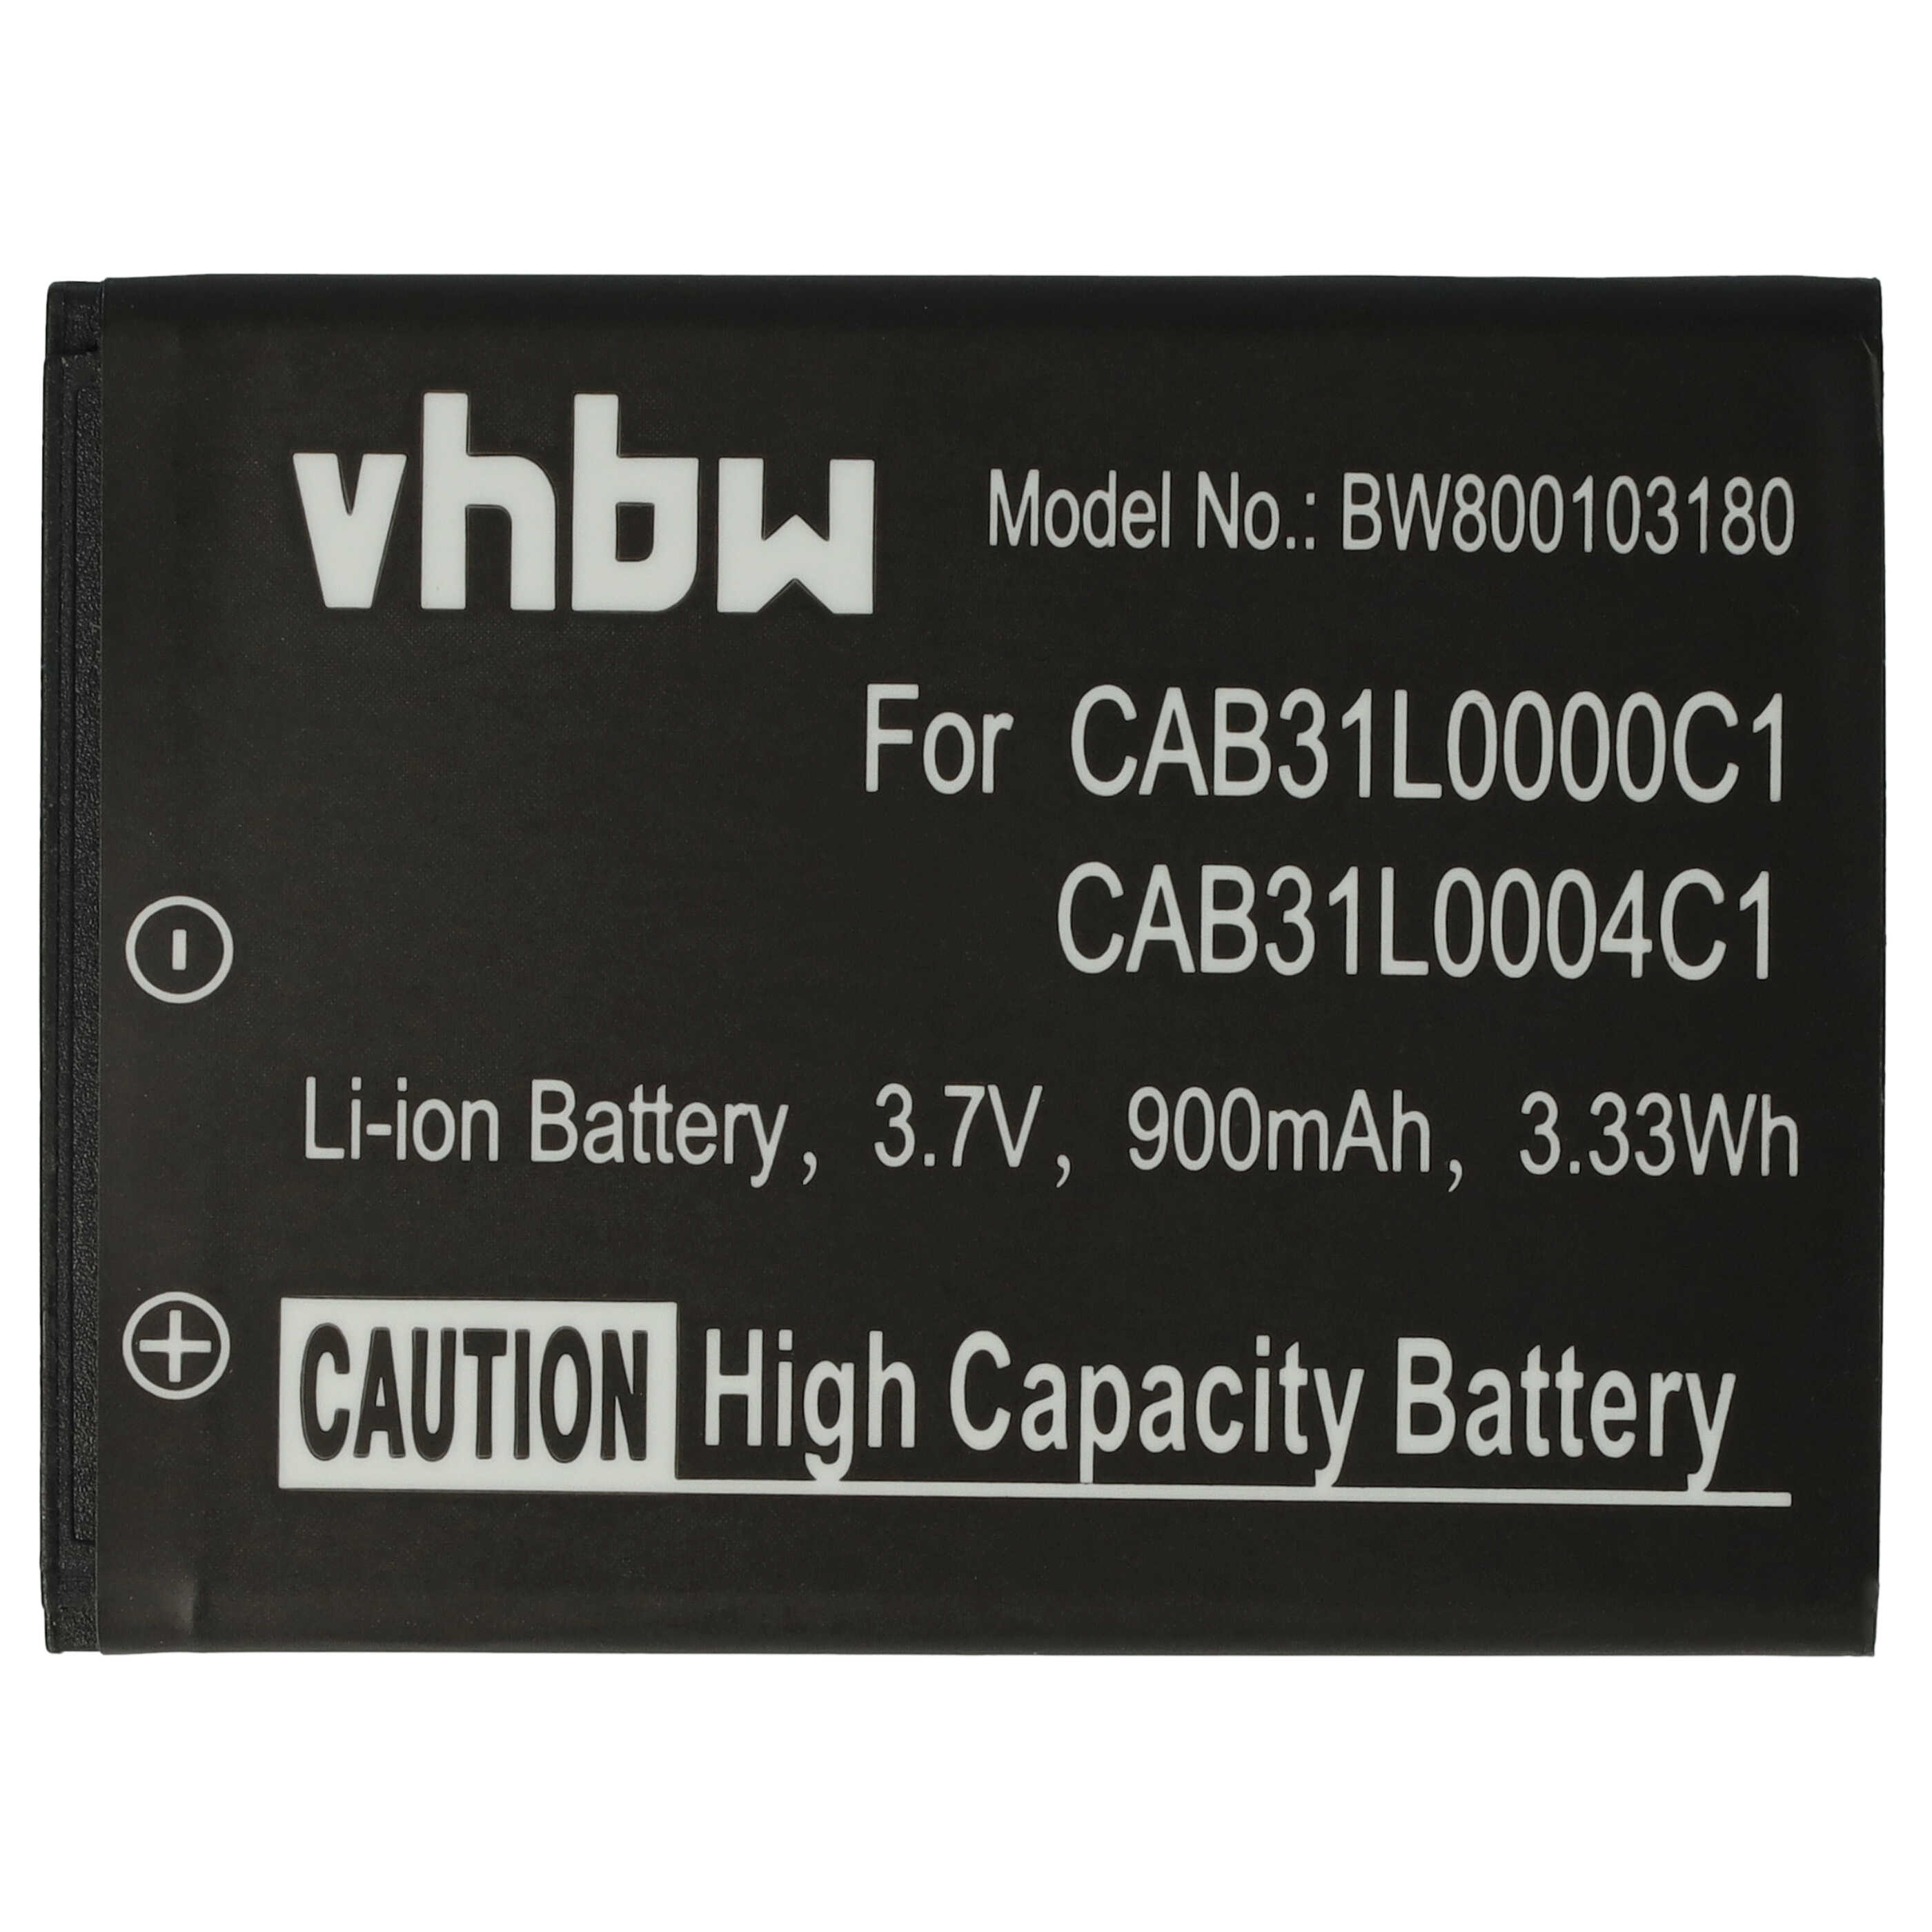 Batería reemplaza Alcatel CAB31L0000C1, CAB31L0000C2 para móvil, teléfono Vodafone - 900 mAh 3,7 V Li-Ion